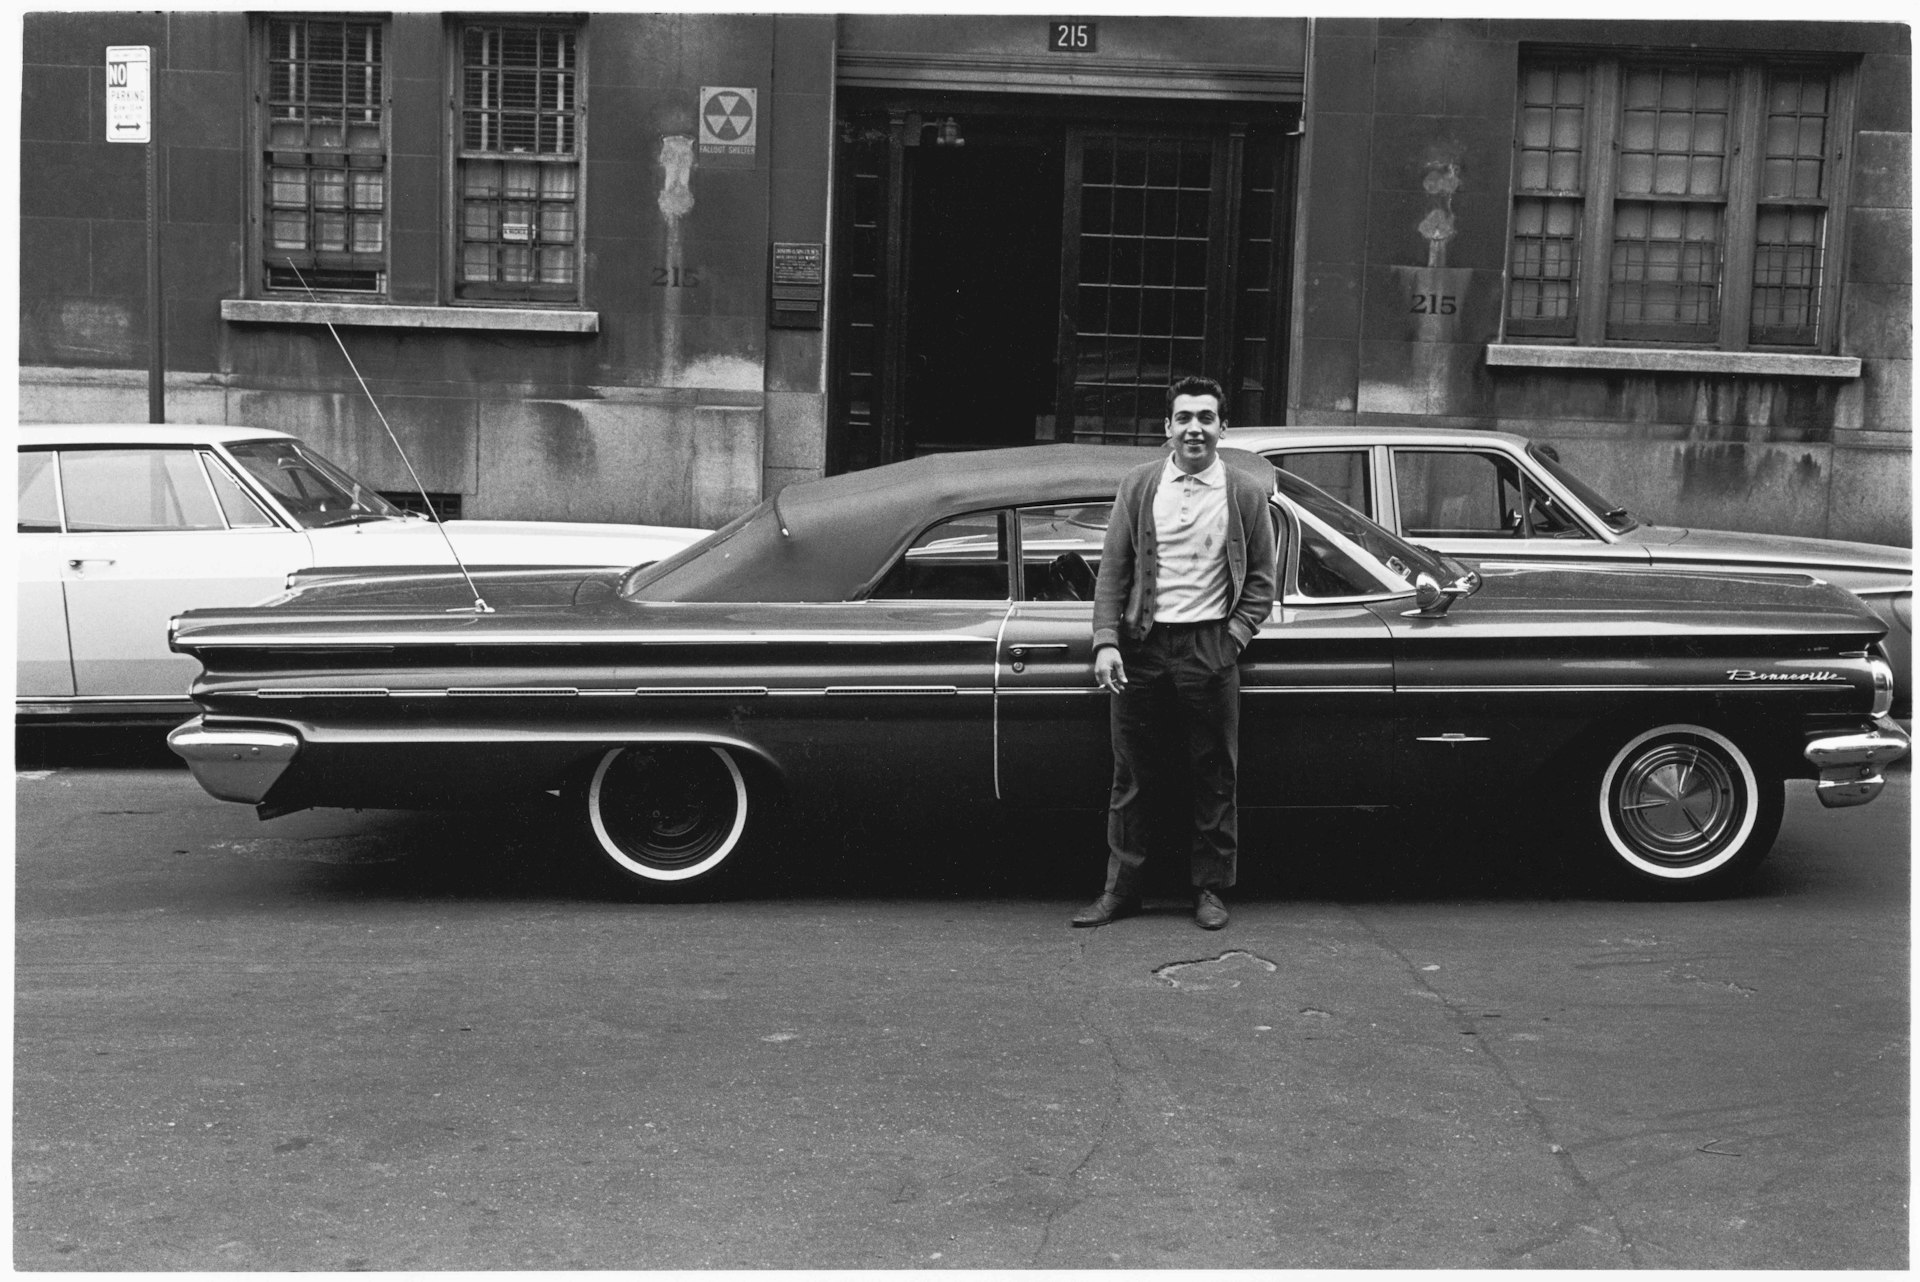 Pontiac Bonneville and its proud owner, 1965